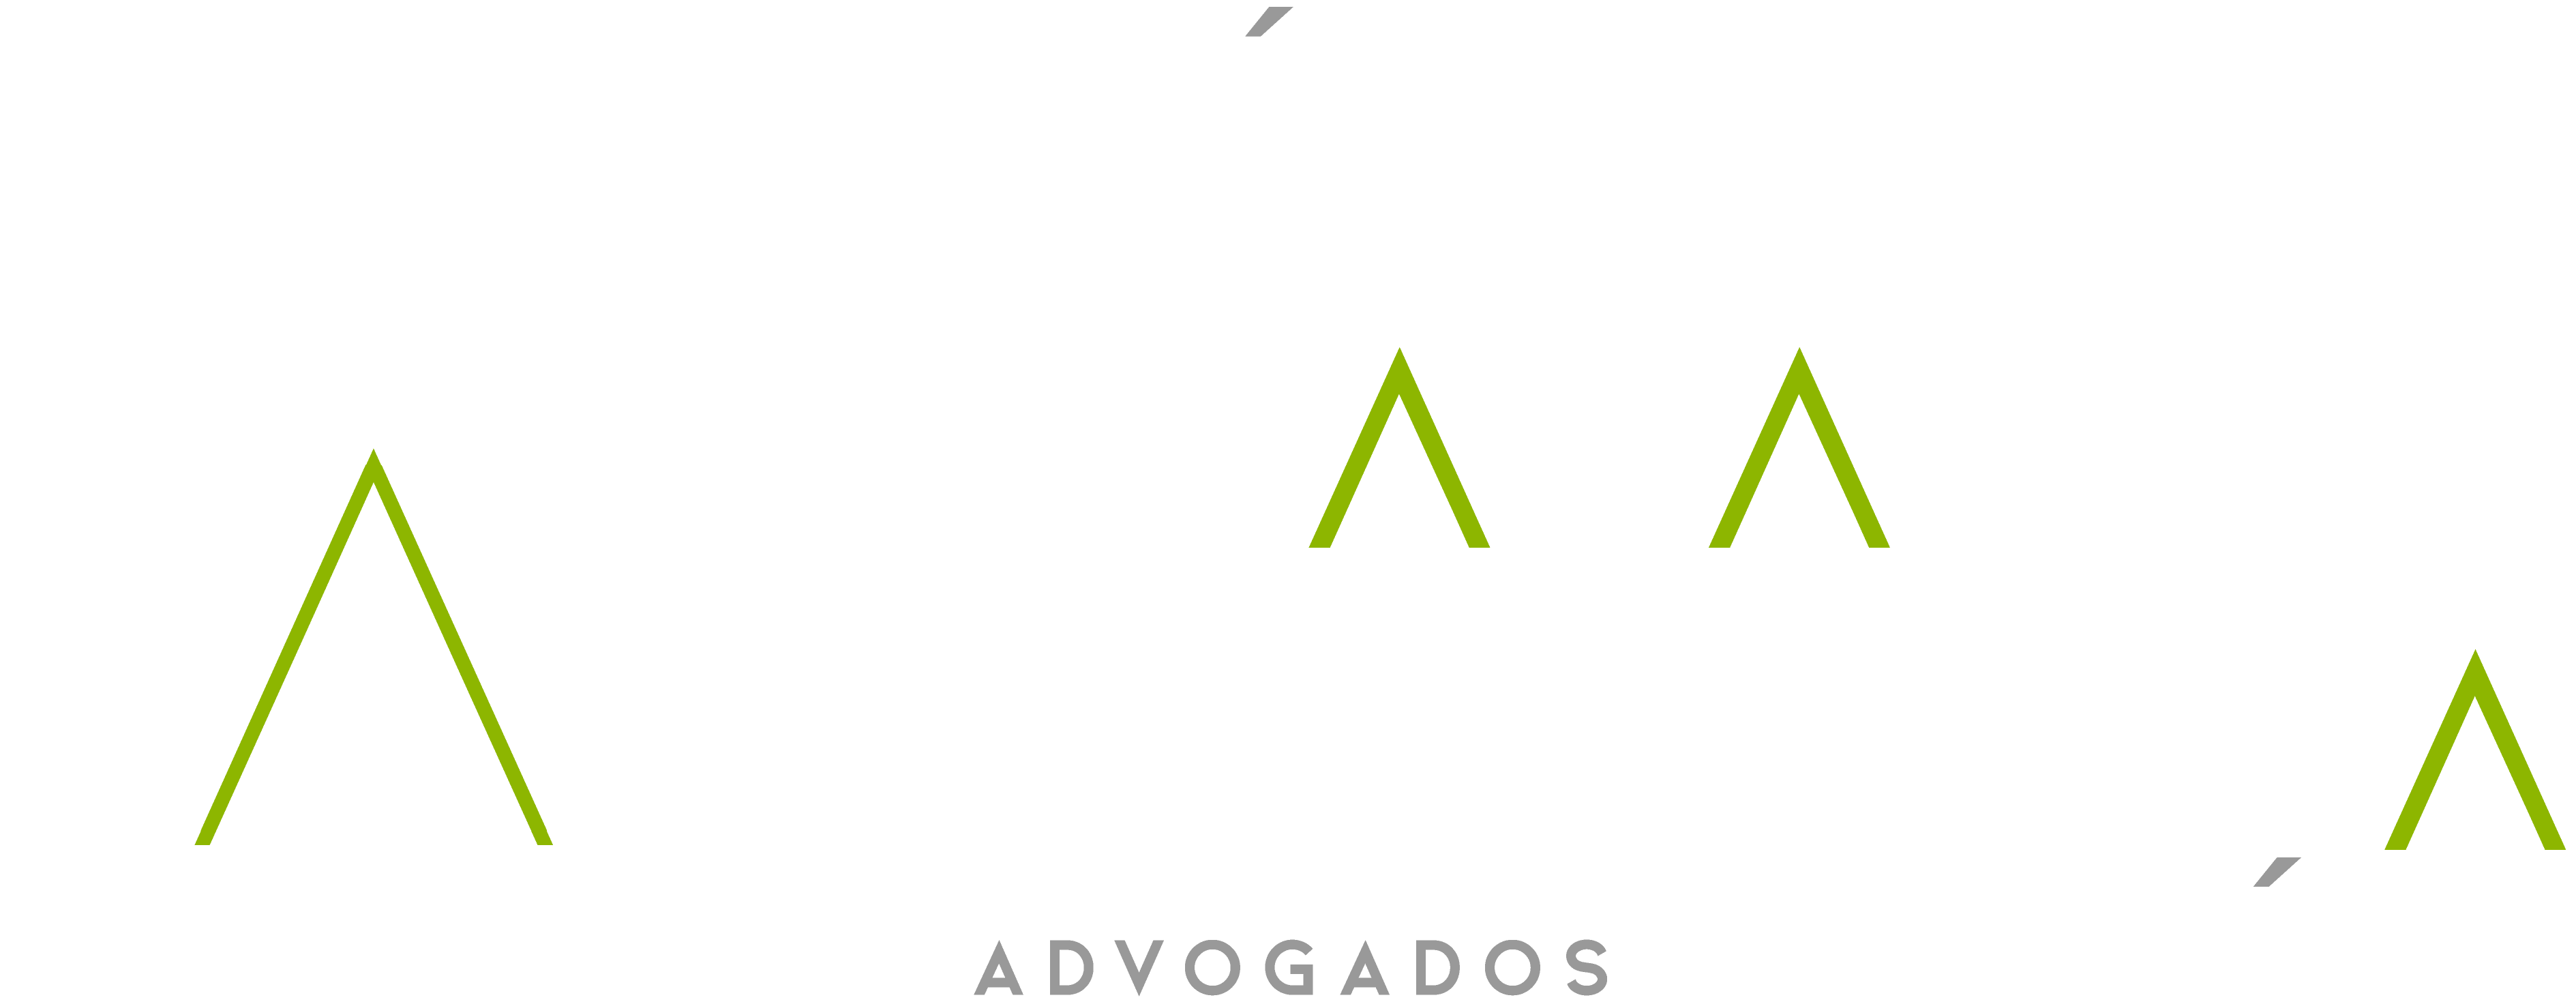 Logo do GBM Law / Góis Braga Mendonça Advogados, em versão com letras em branco e detalhes em verde, com fundo transparente